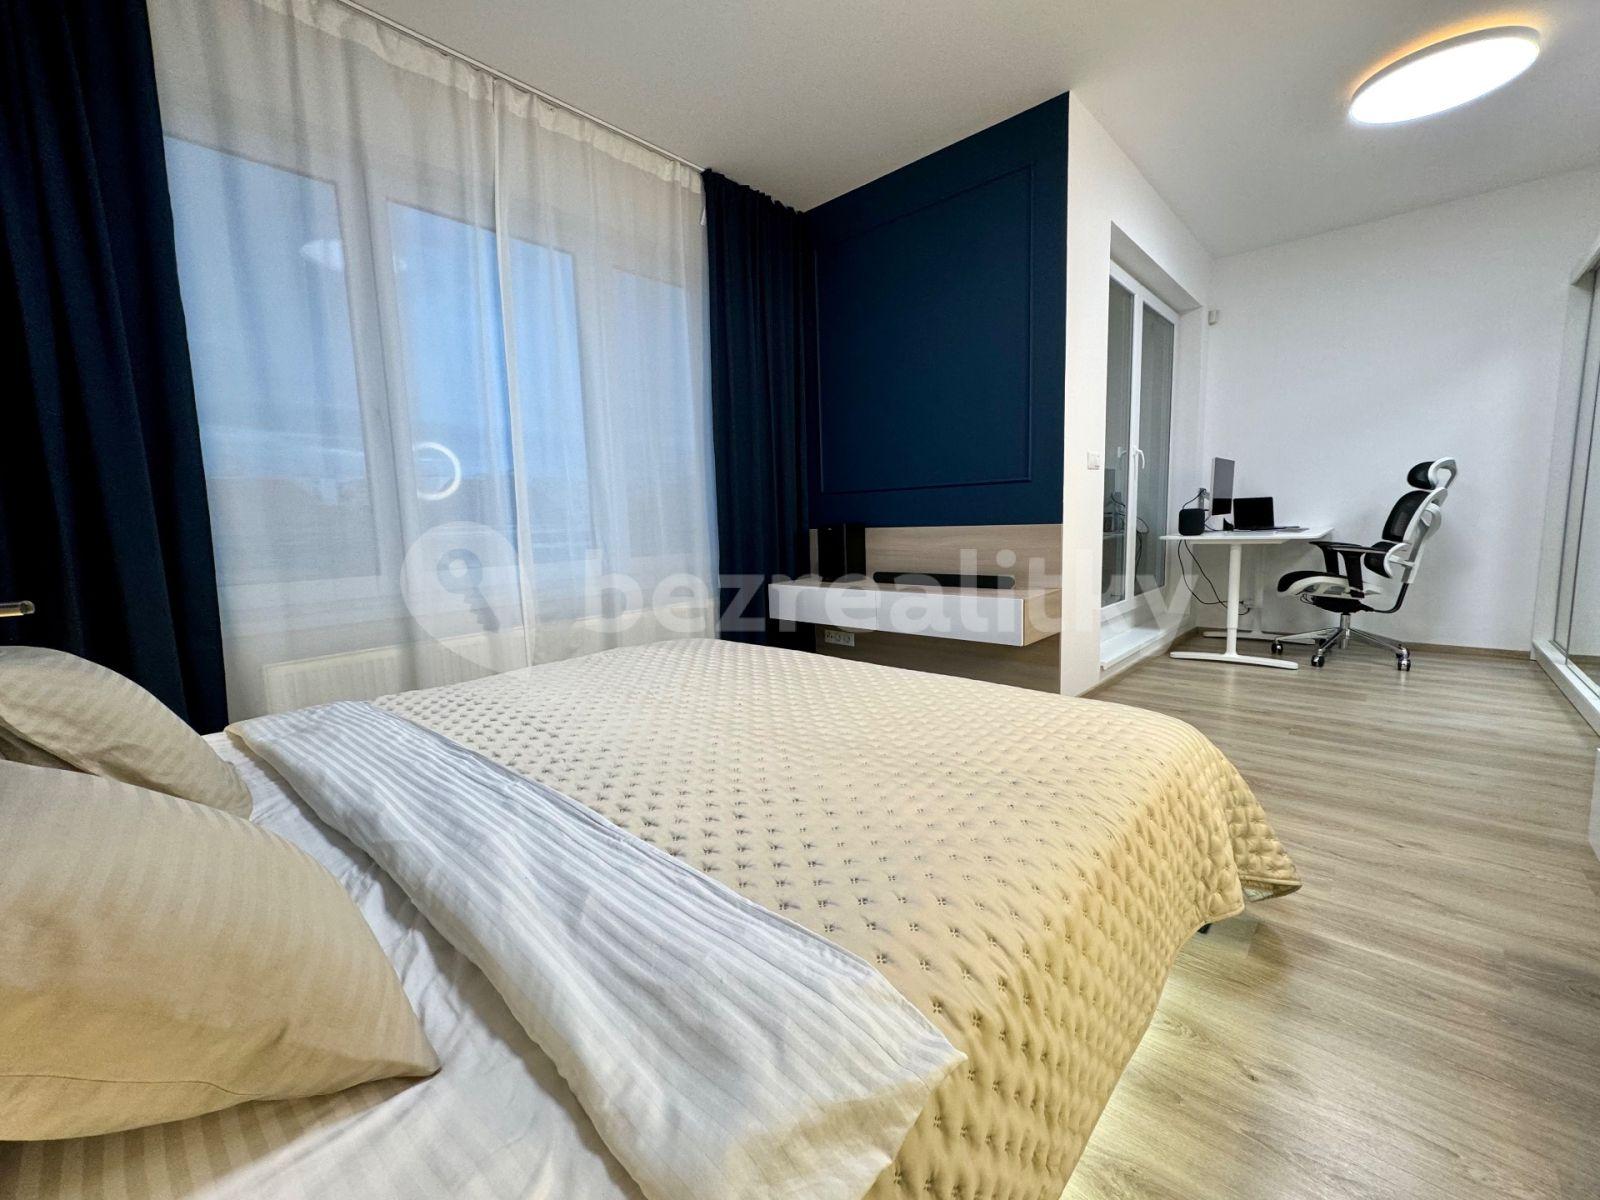 1 bedroom with open-plan kitchen flat for sale, 74 m², Petrohradská, Prague, Prague